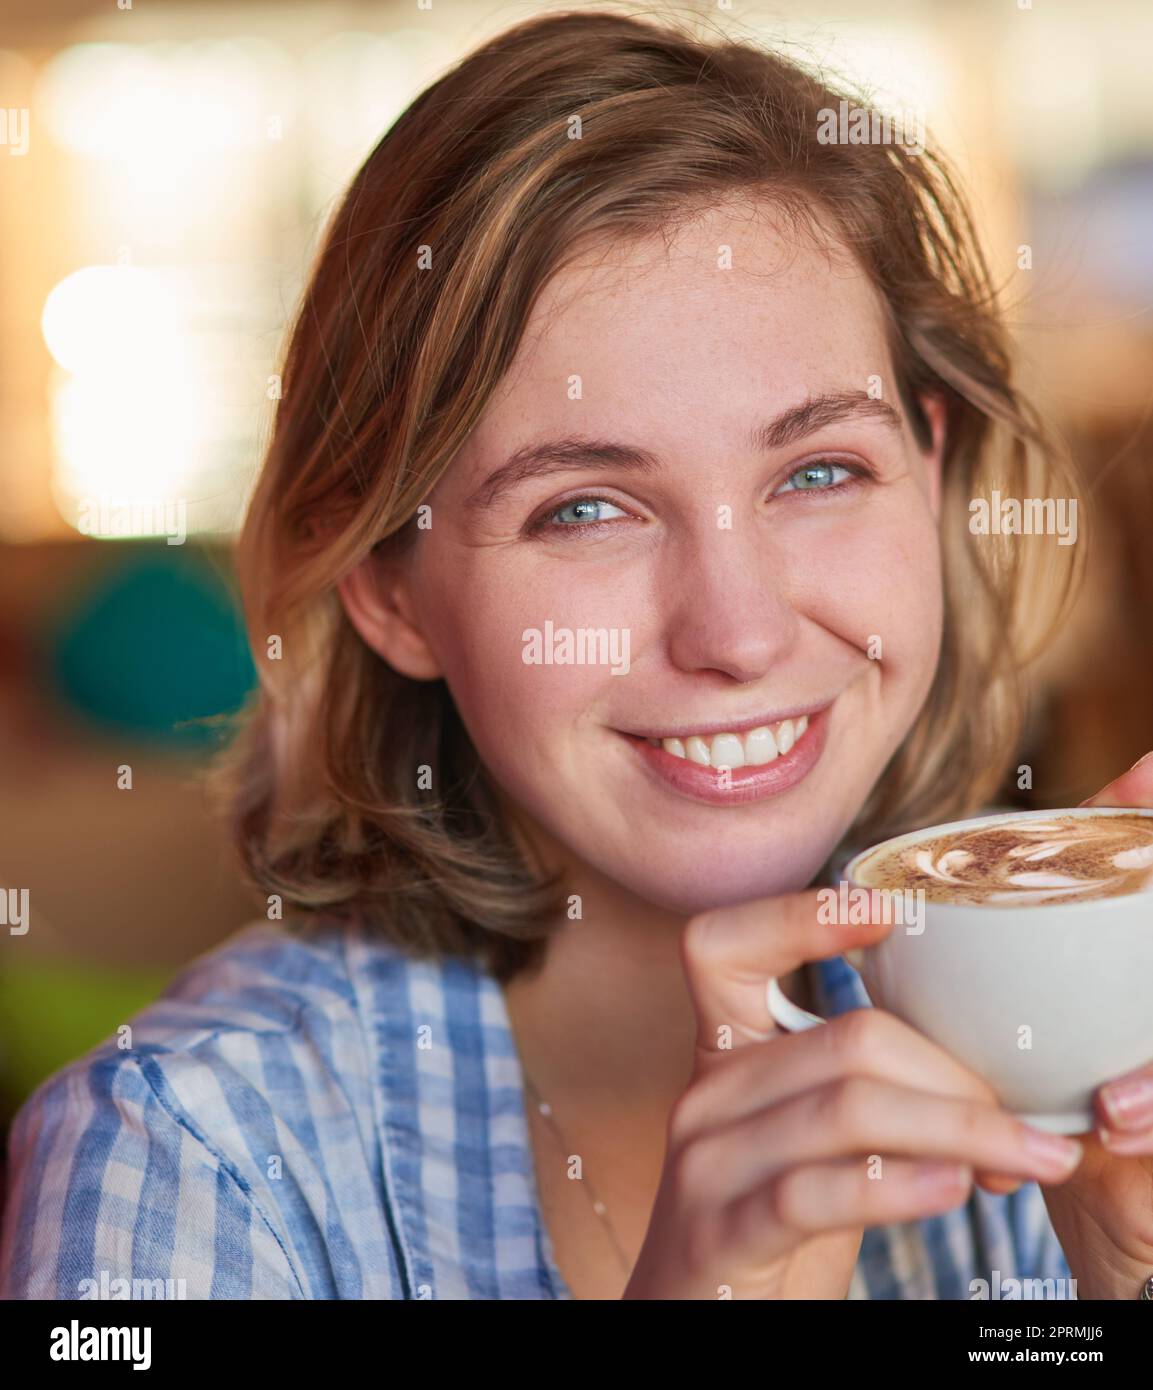 Les cappuccinos faits maison ont juste un meilleur goût. Une jeune femme heureuse de boire un cappuccino à la maison. Banque D'Images